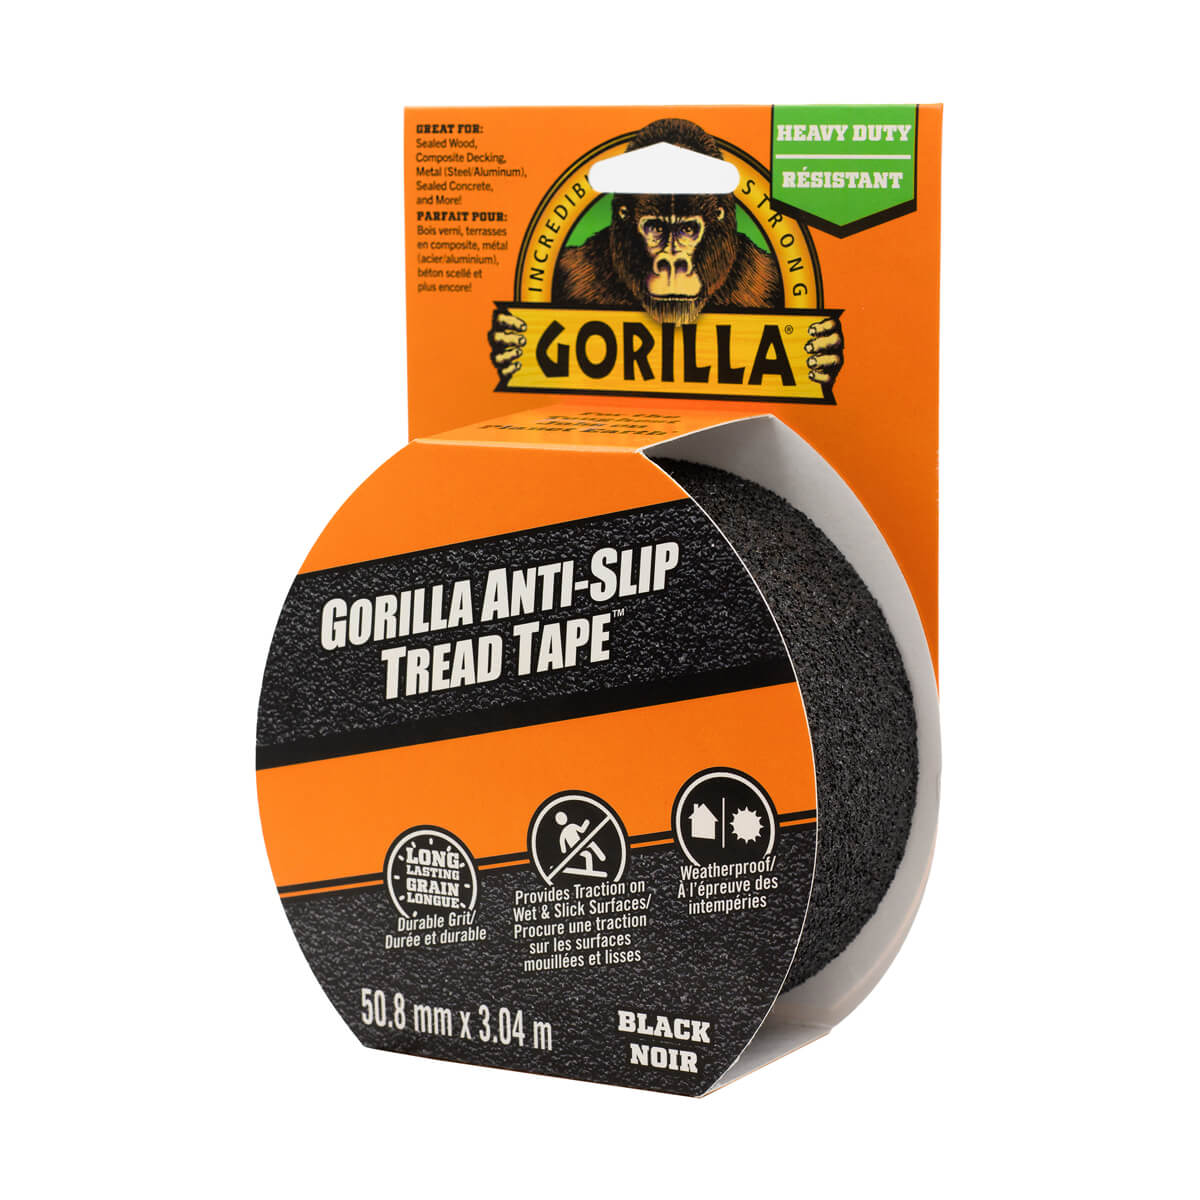 Gorilla Anti-Slip Tread Tape - 3m